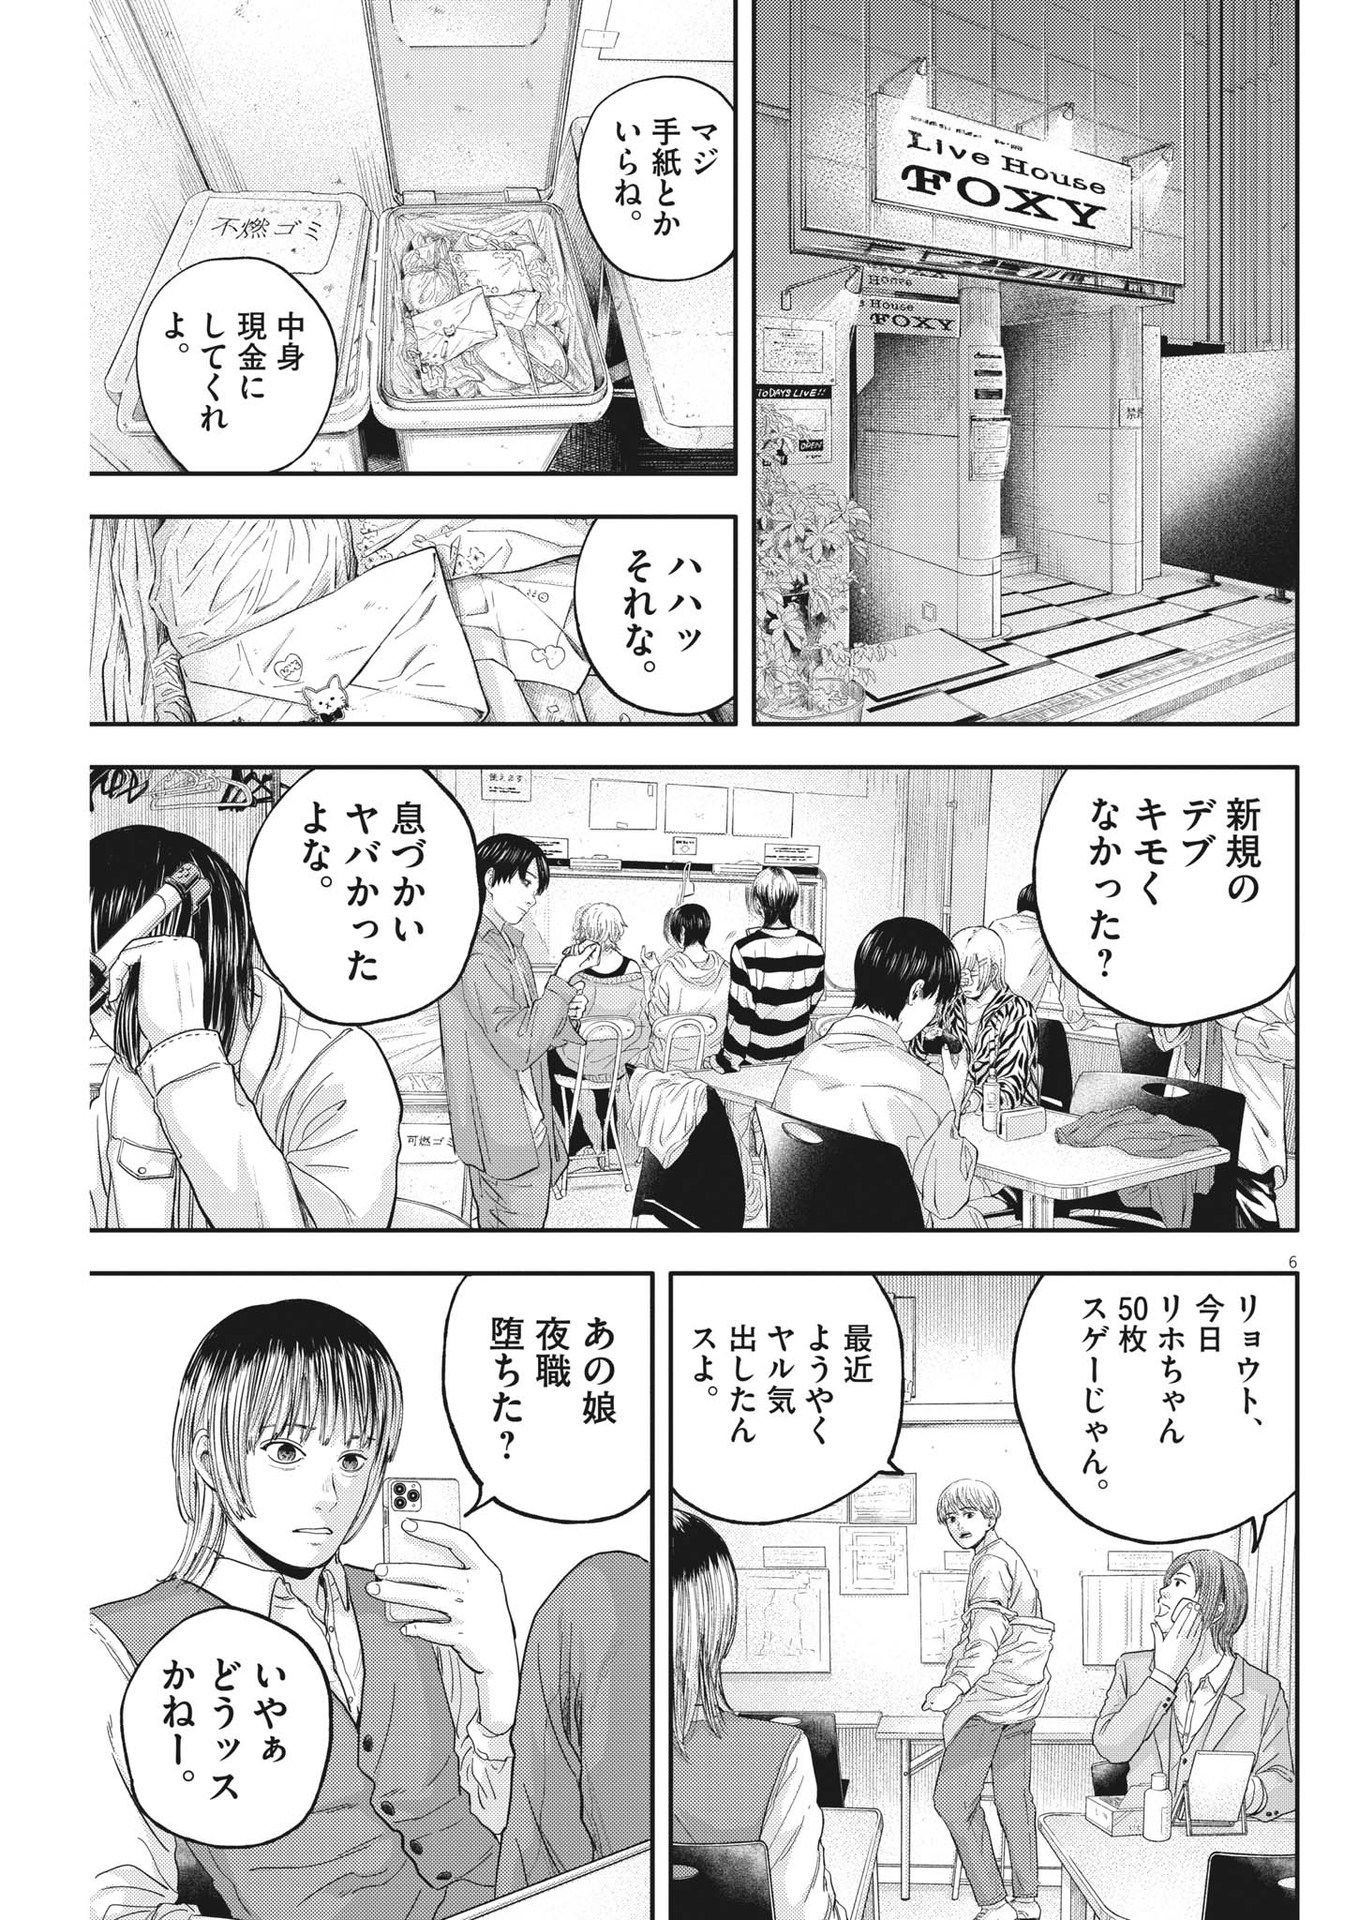 Yumenashi-sensei no Shinroshidou - Chapter 12 - Page 7